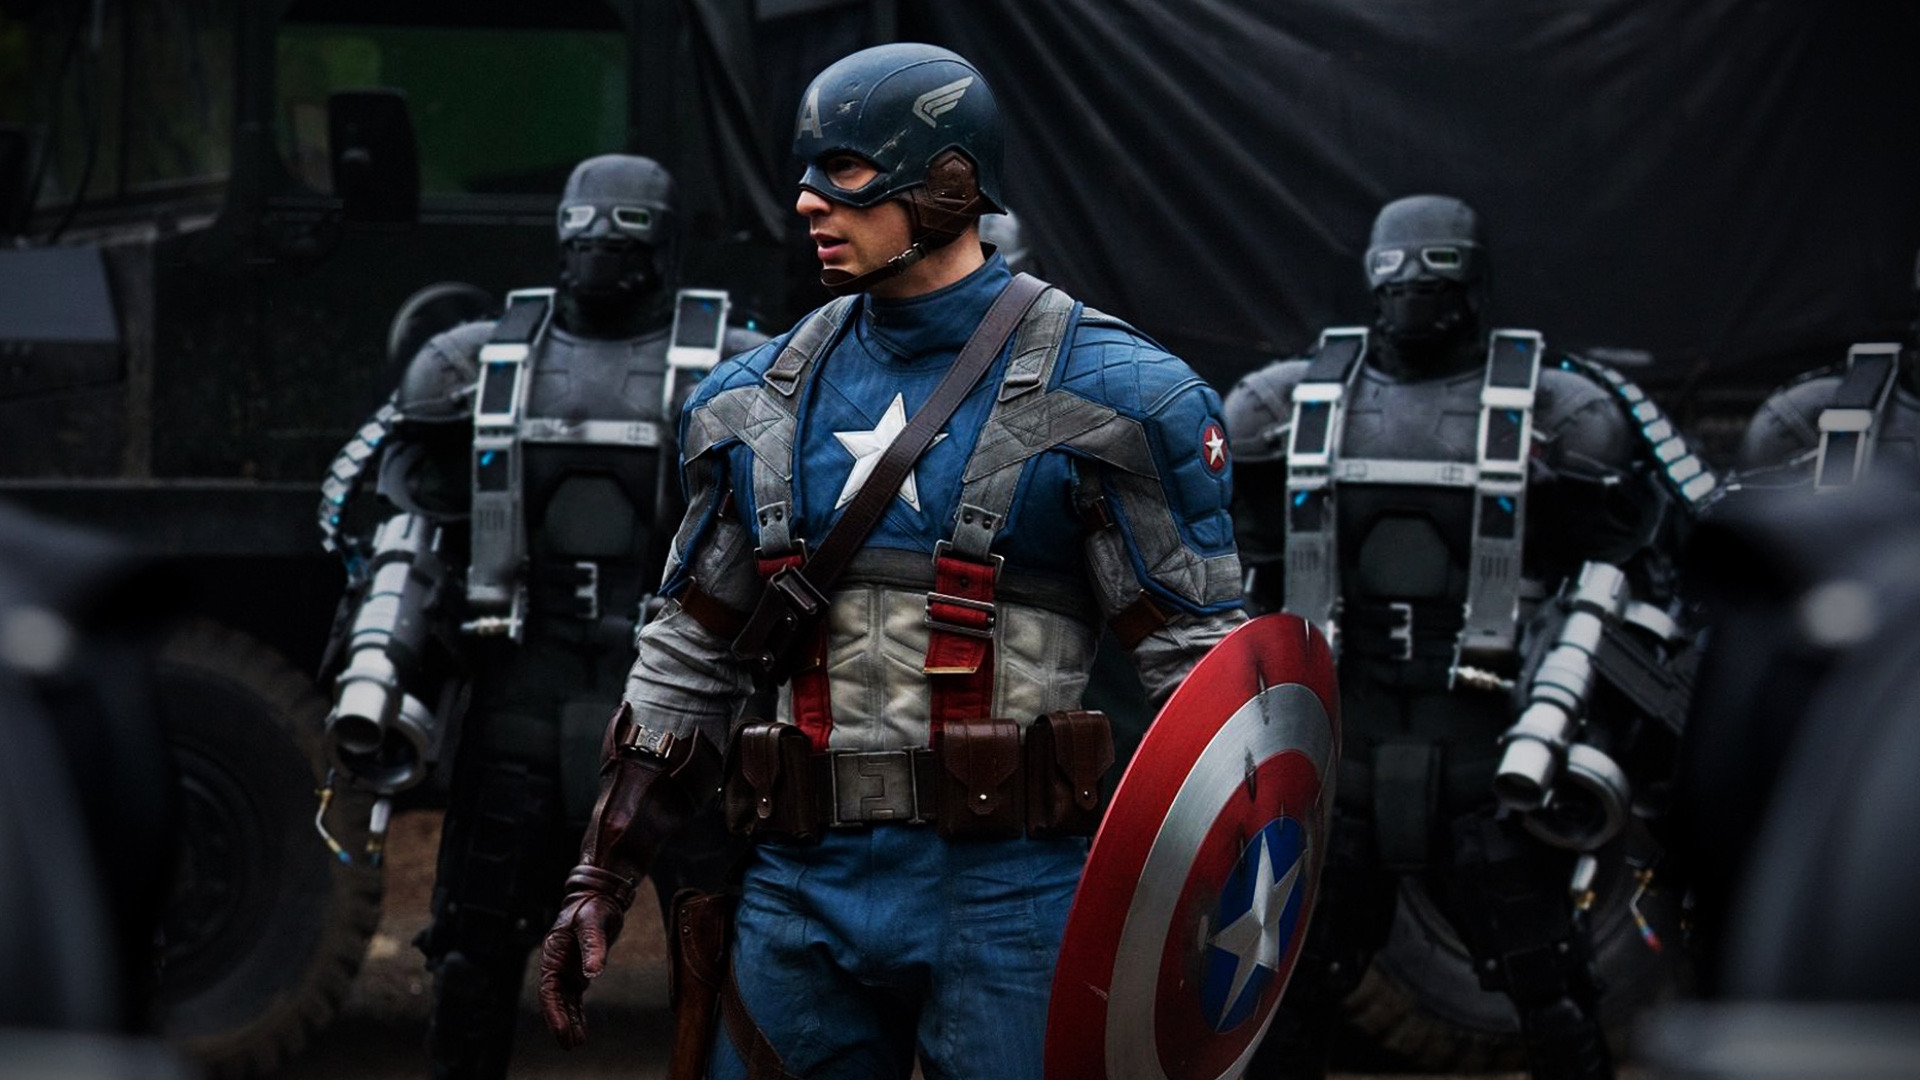 Captain America 2011 for 1920 x 1080 HDTV 1080p resolution